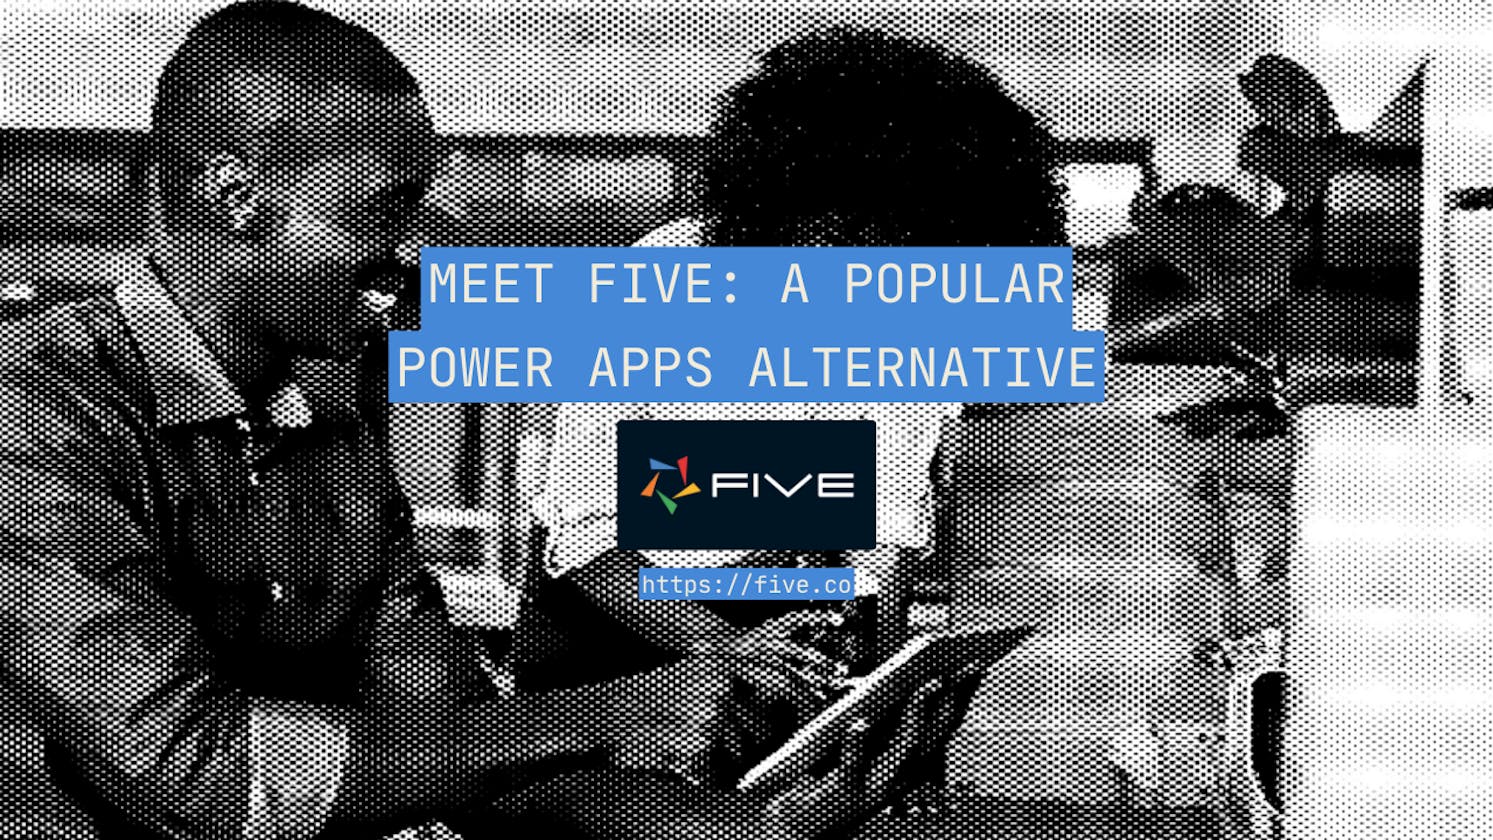 Meet Five: A Popular Power Apps Alternative